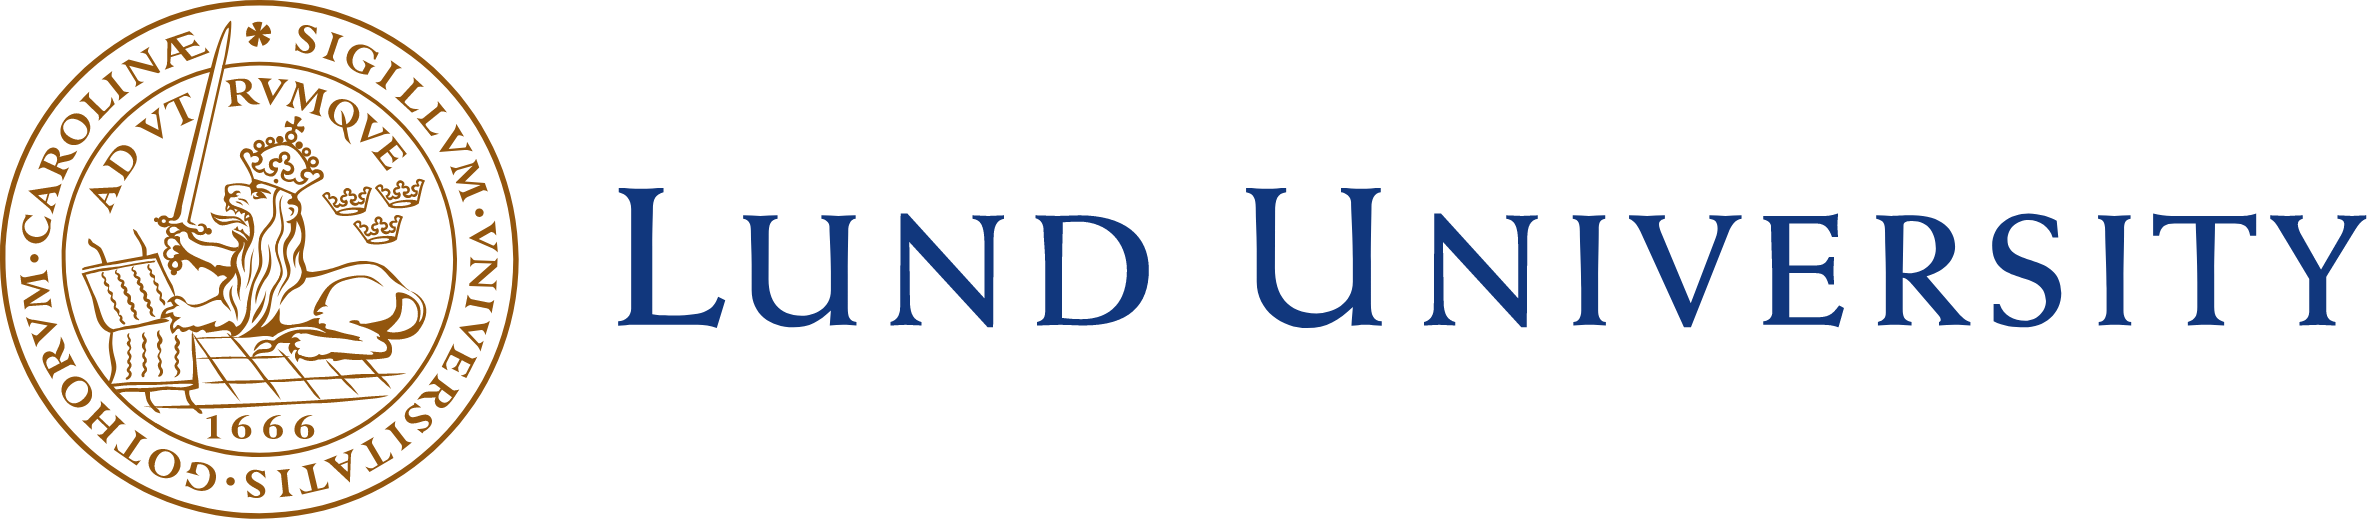 Lund_university